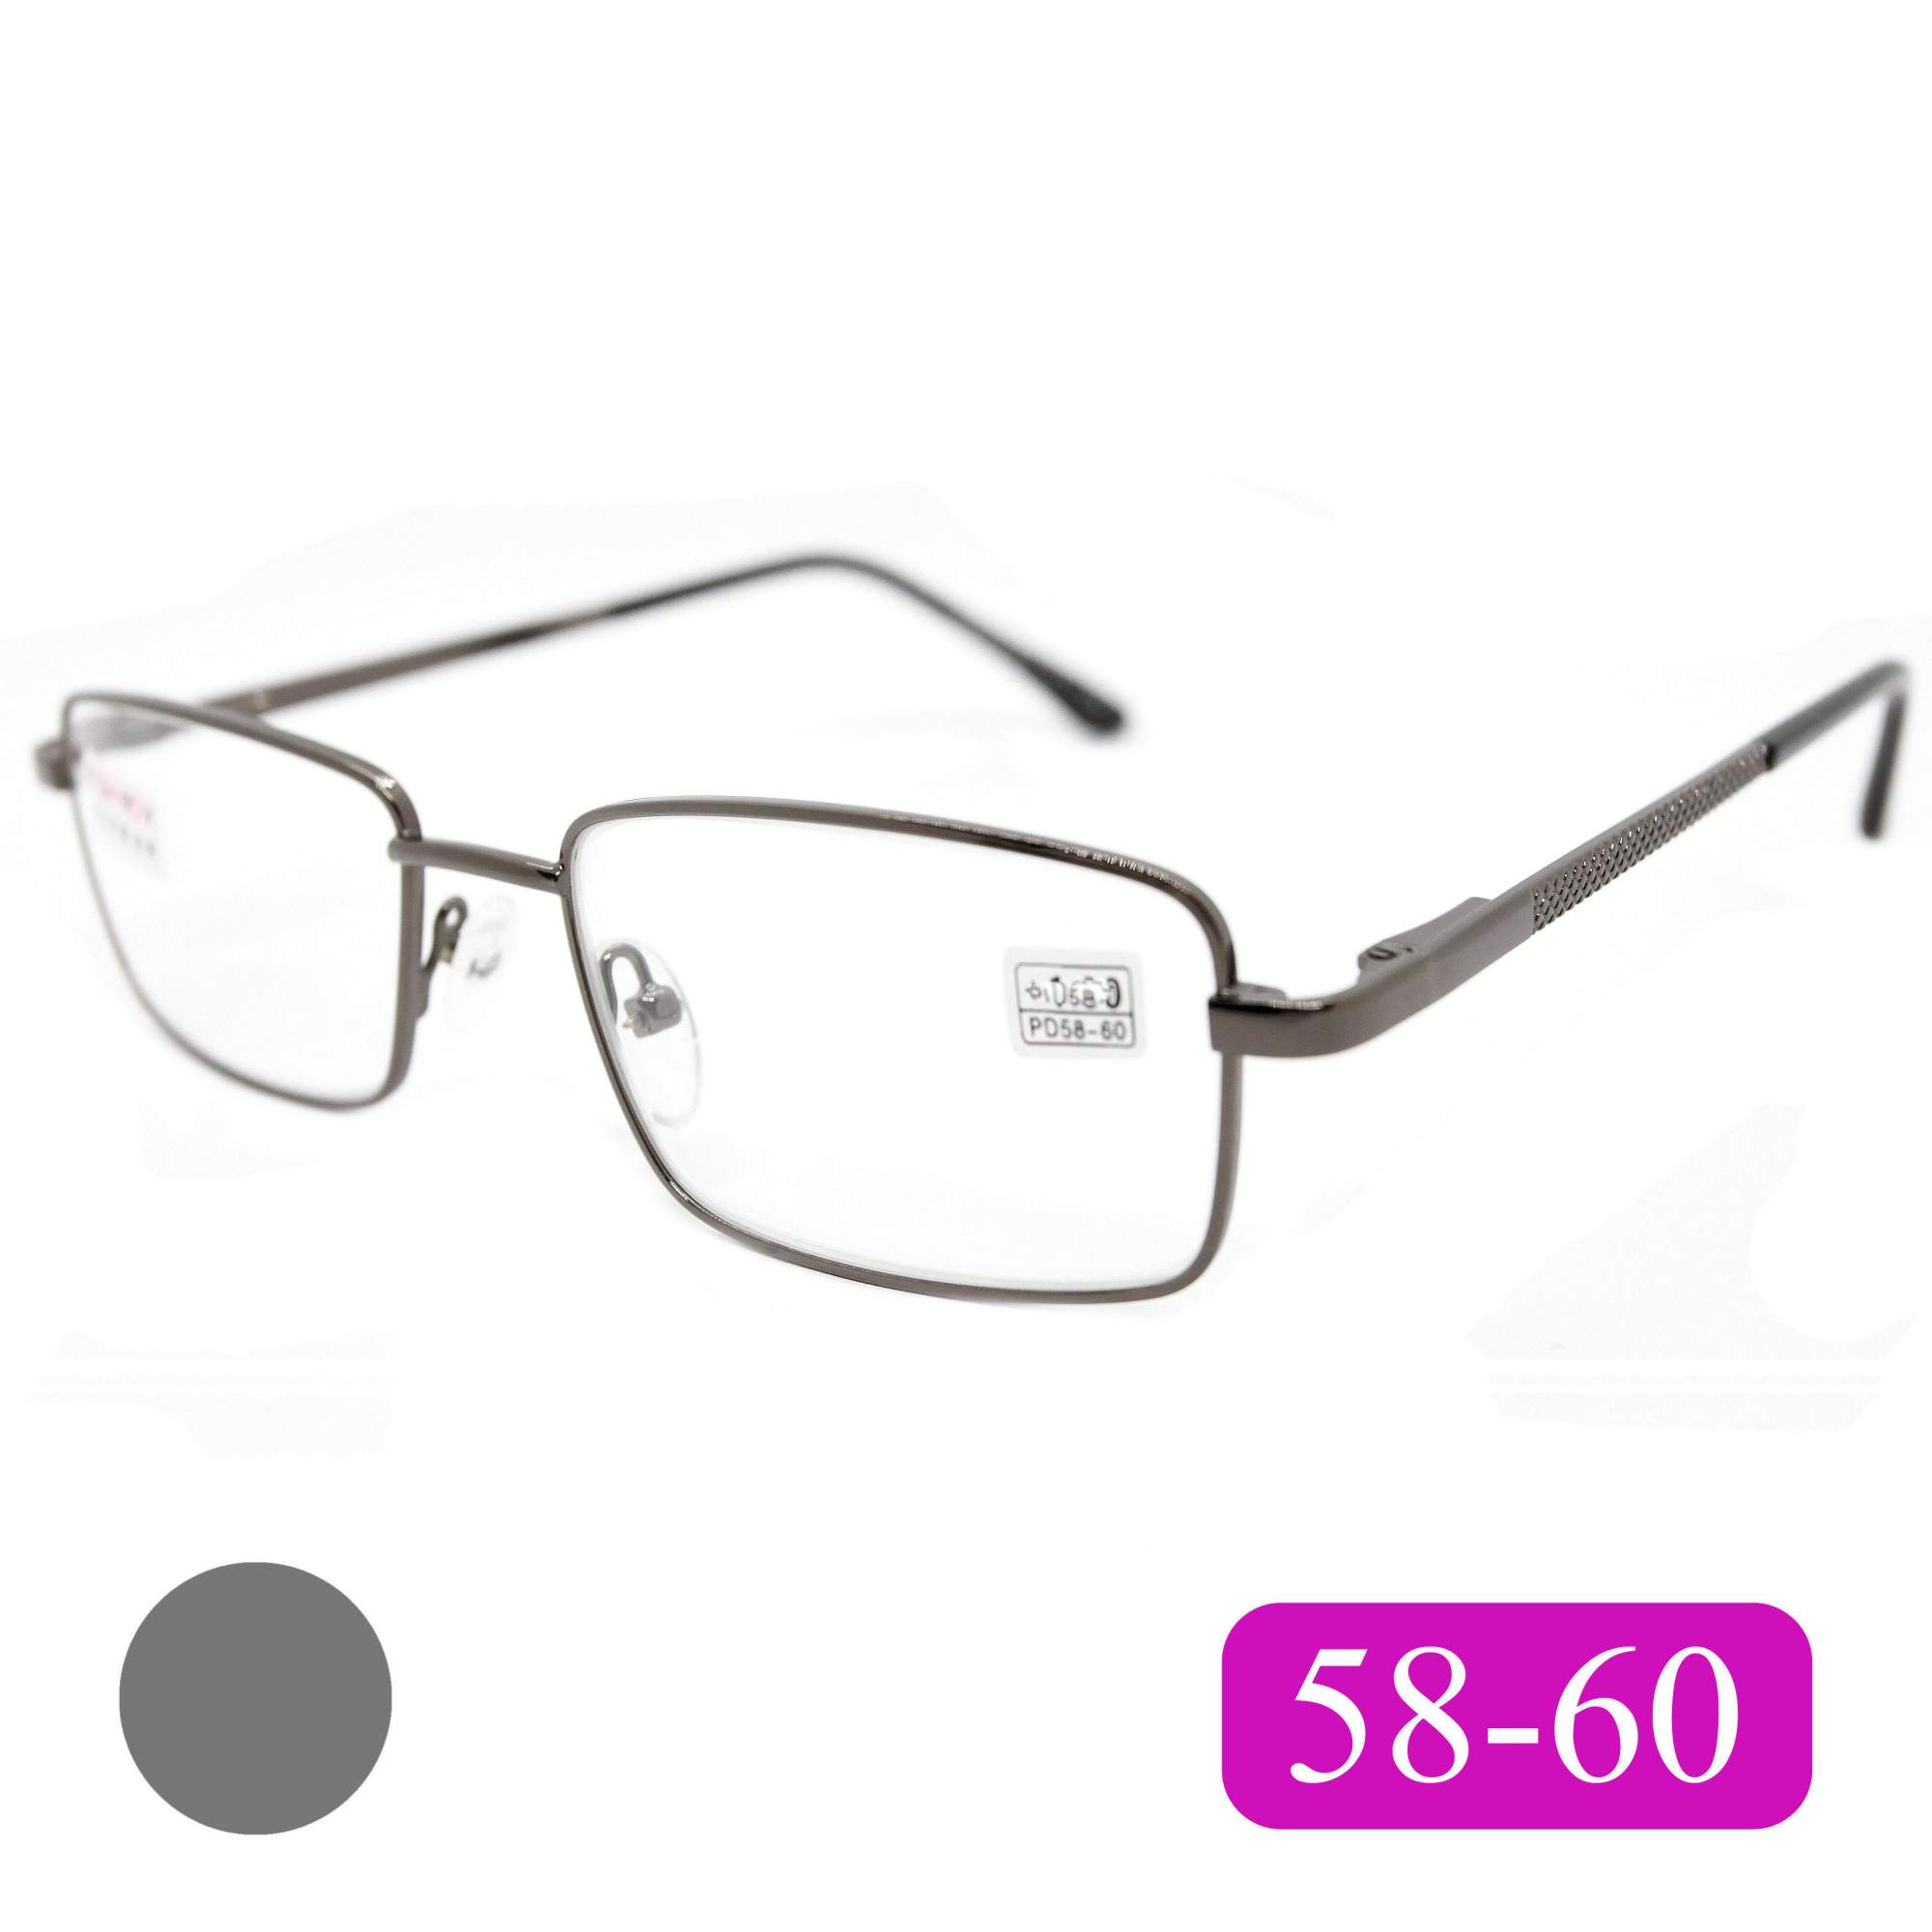 Готовые очки Fedrov 569, со стеклянной линзой, +3,75, без футляра, цвет серый, РЦ 58-60